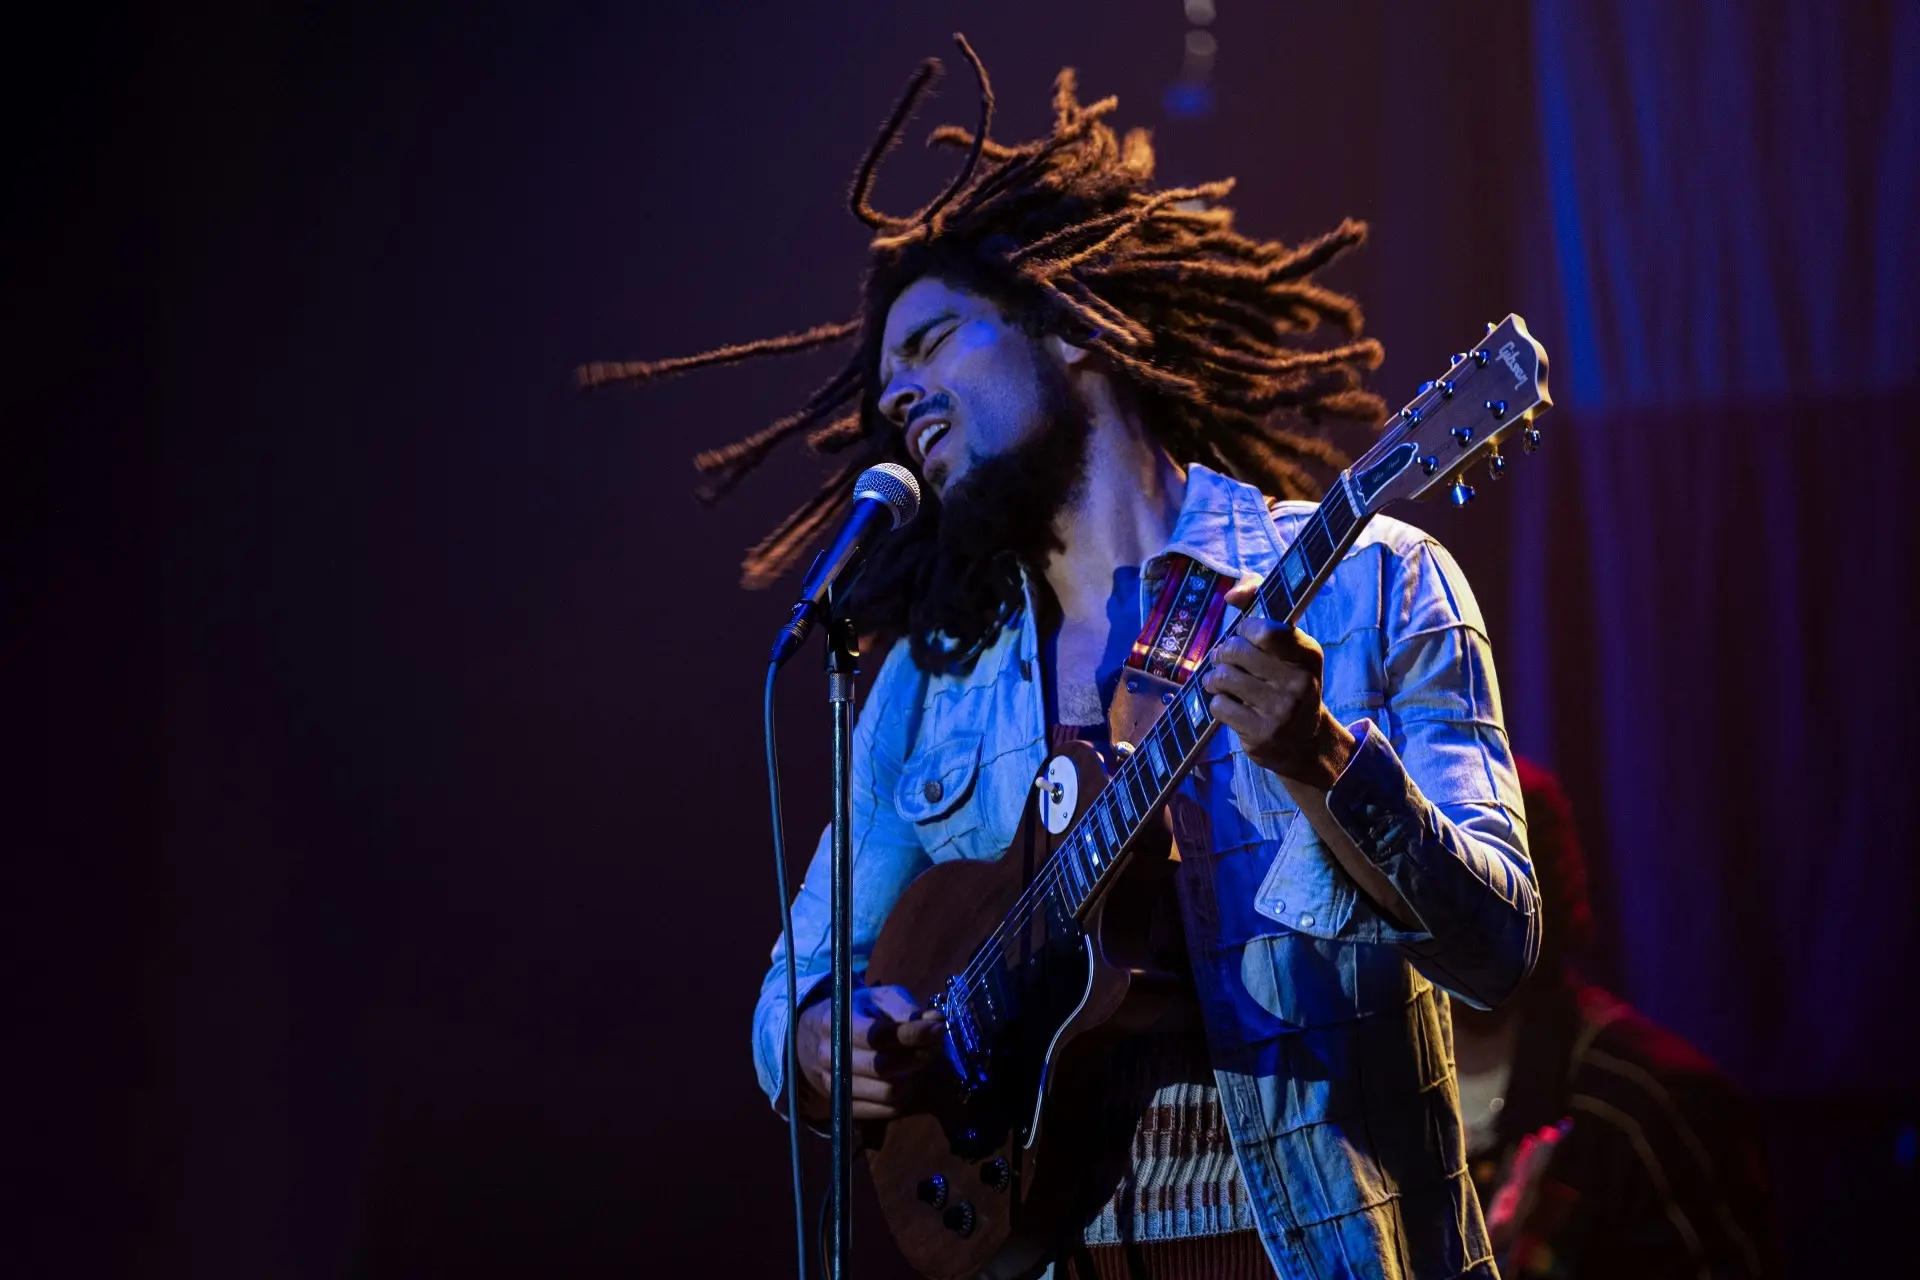 Recenze: Bob Marley: One Love neoslní ani největší fanoušky geniálního hudebníka